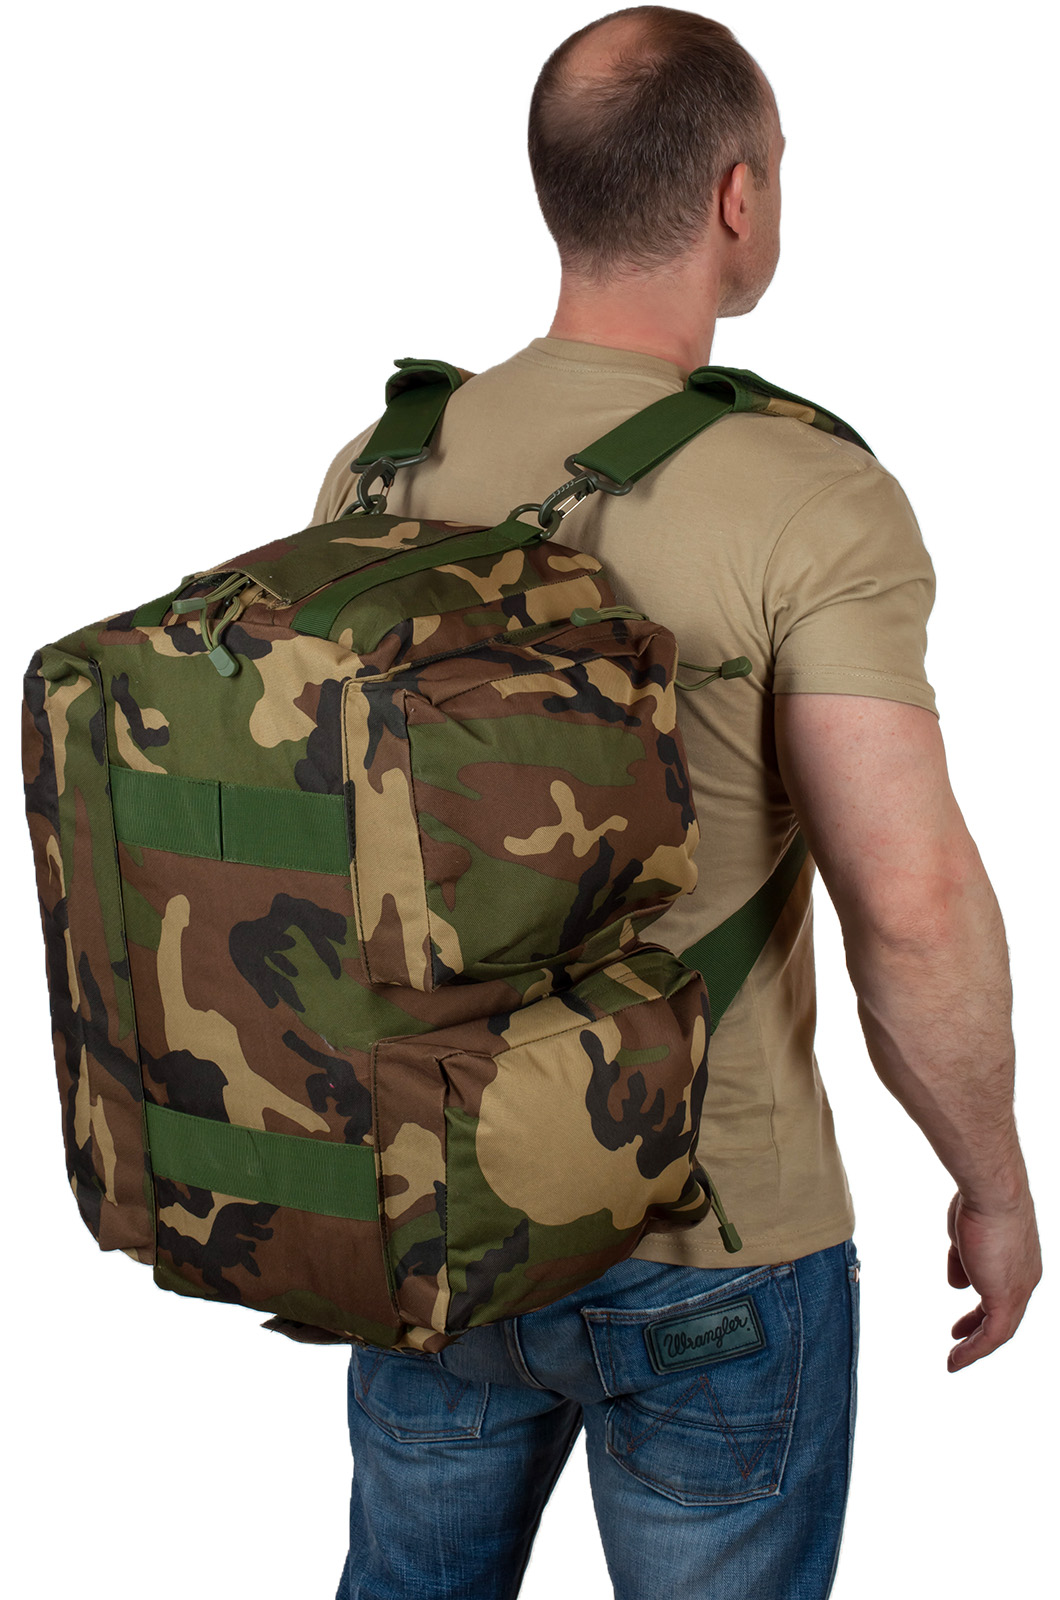 Военная дорожная сумка с нашивкой ВКС 